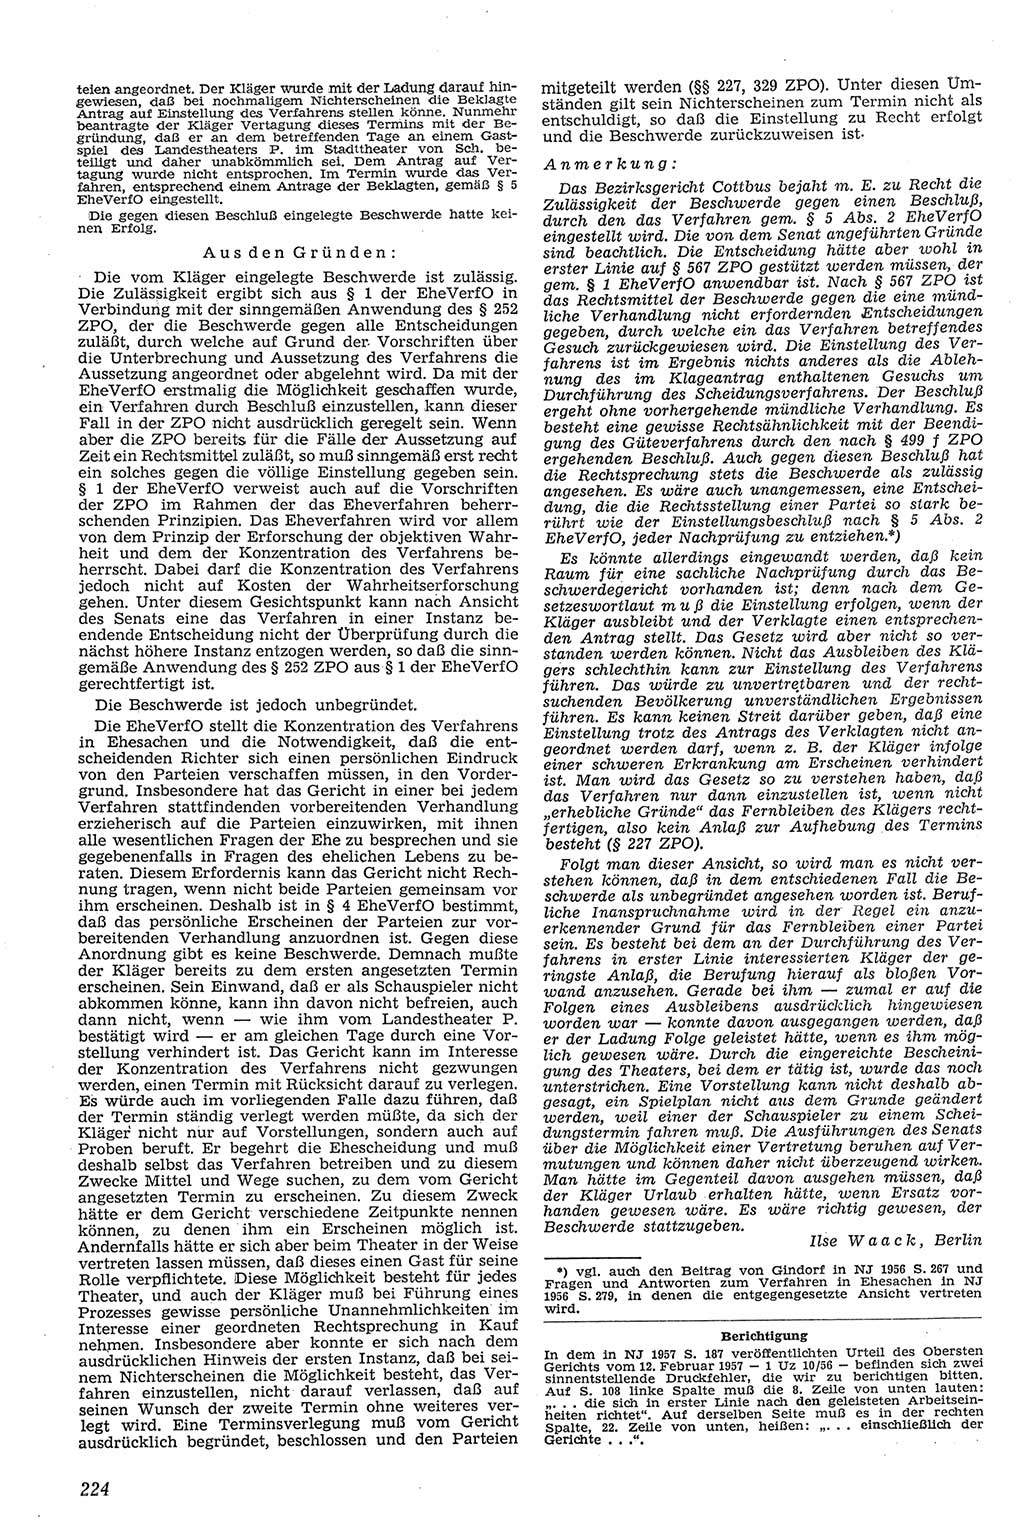 Neue Justiz (NJ), Zeitschrift für Recht und Rechtswissenschaft [Deutsche Demokratische Republik (DDR)], 11. Jahrgang 1957, Seite 224 (NJ DDR 1957, S. 224)